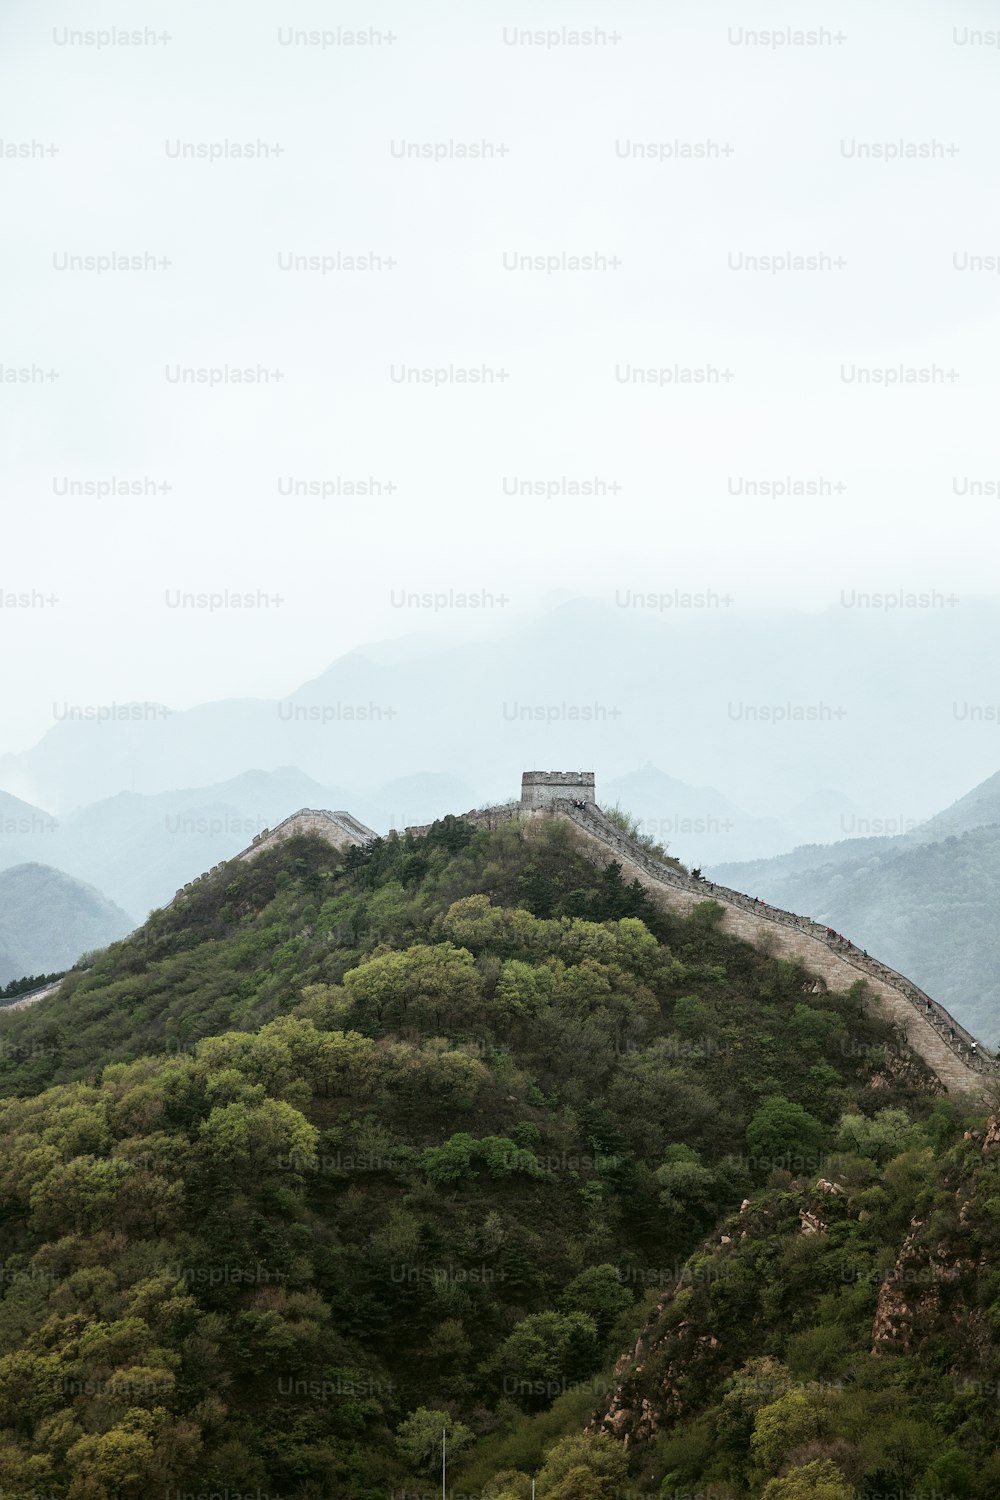 La Gran Muralla China en un día nublado